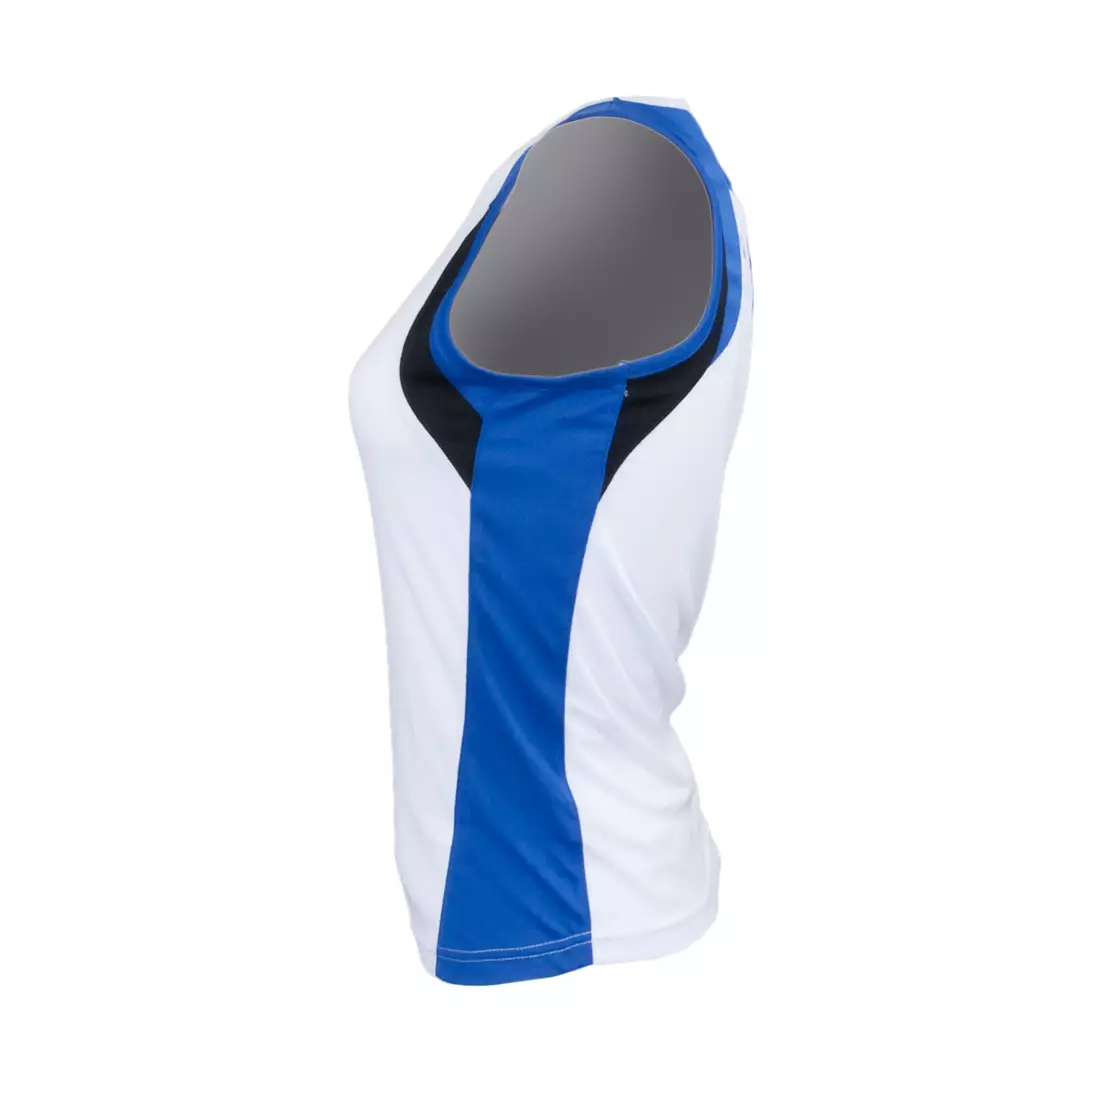 ROGELLI RUN ESTY - ultra-light women's sports T-shirt, sleeveless